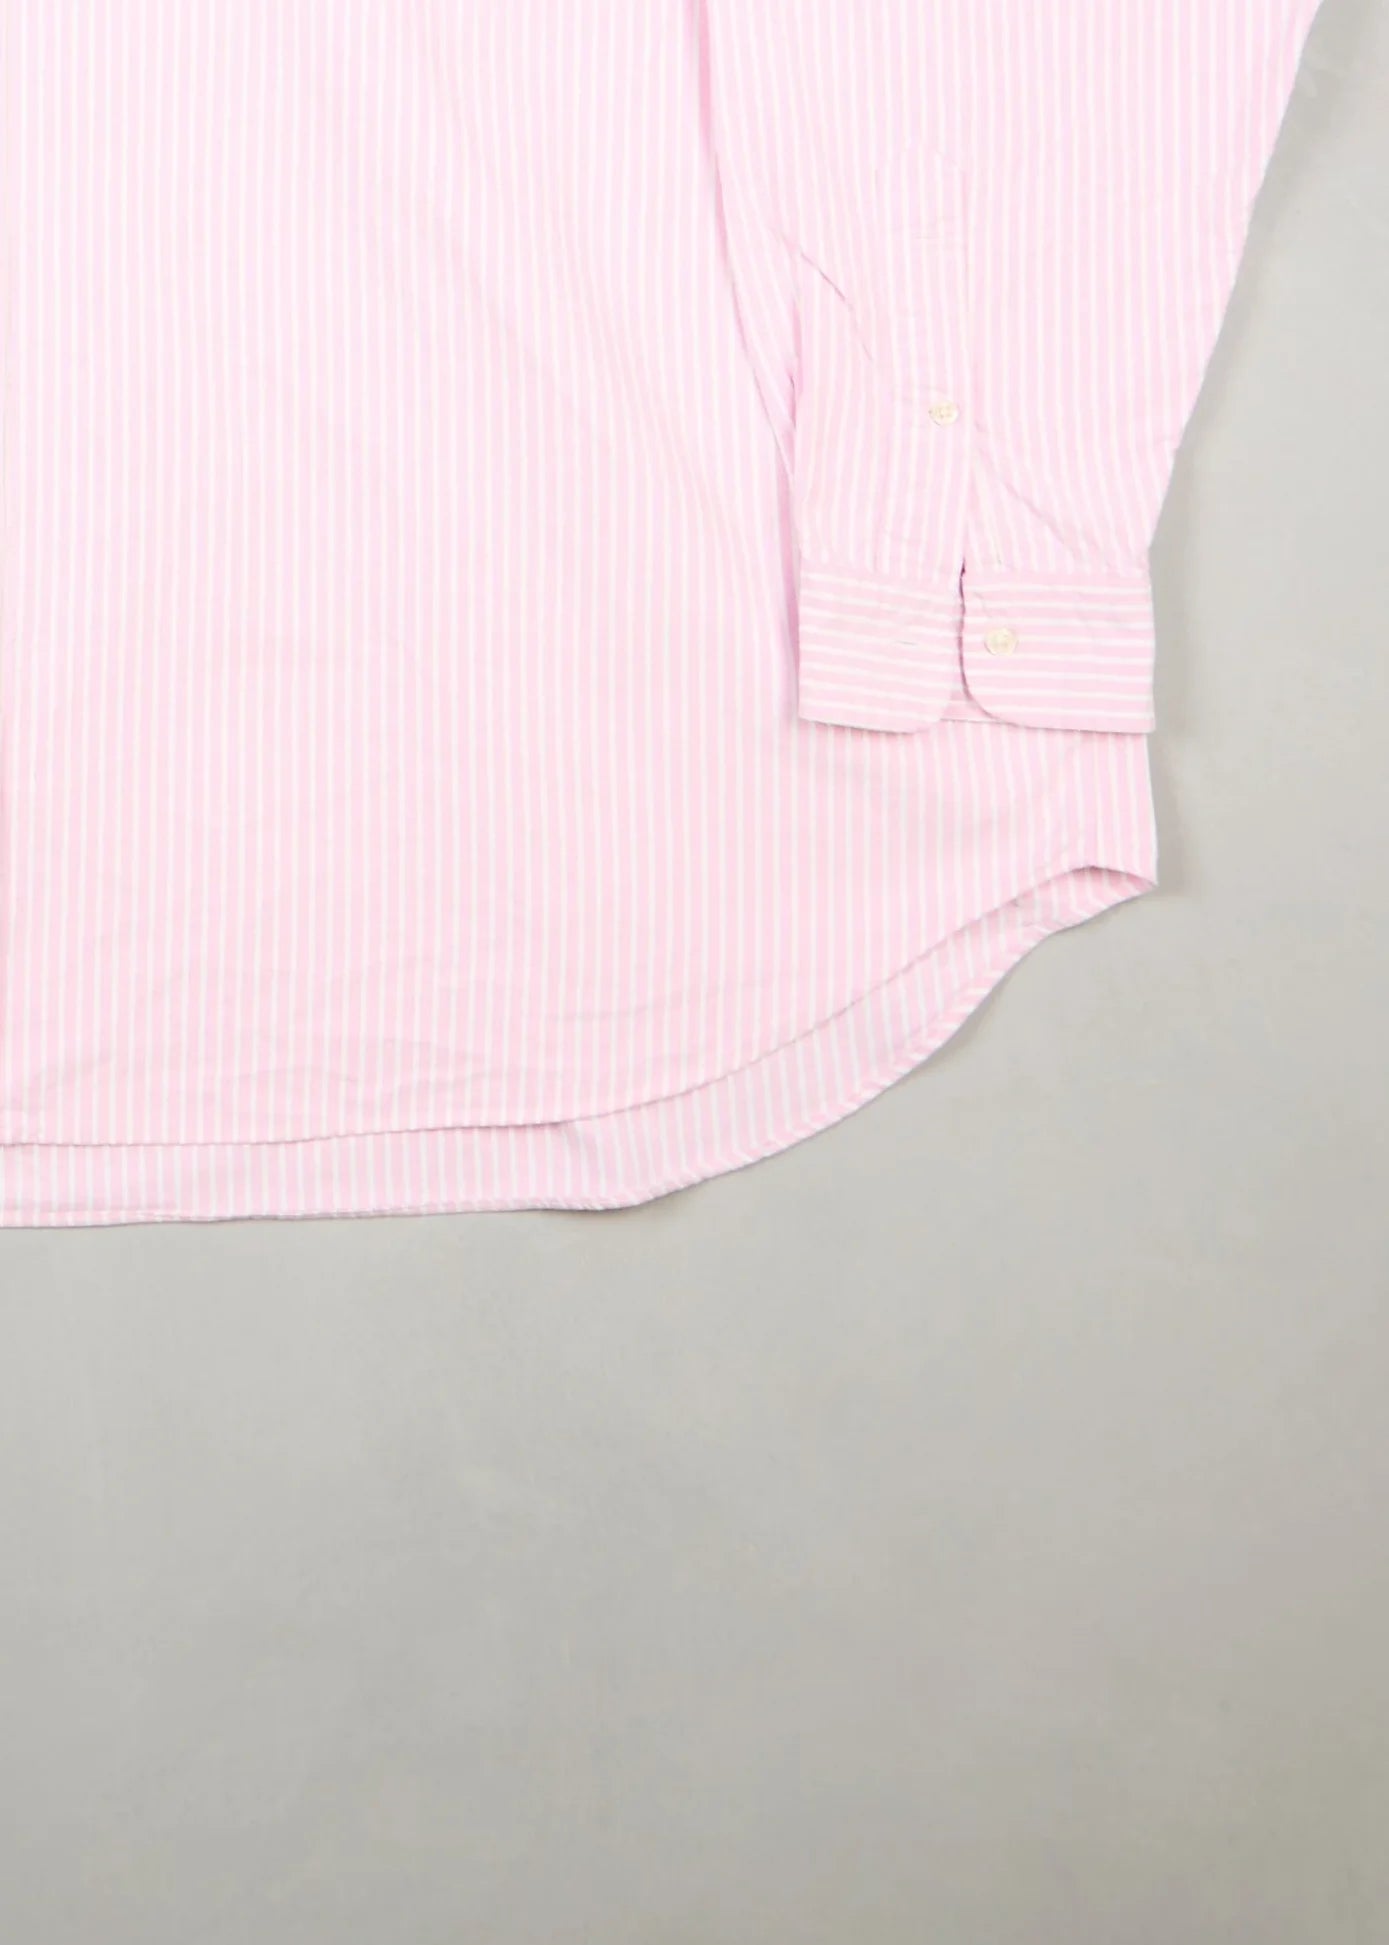 Ralph Lauren - Shirt (XXXL) Bottom Right